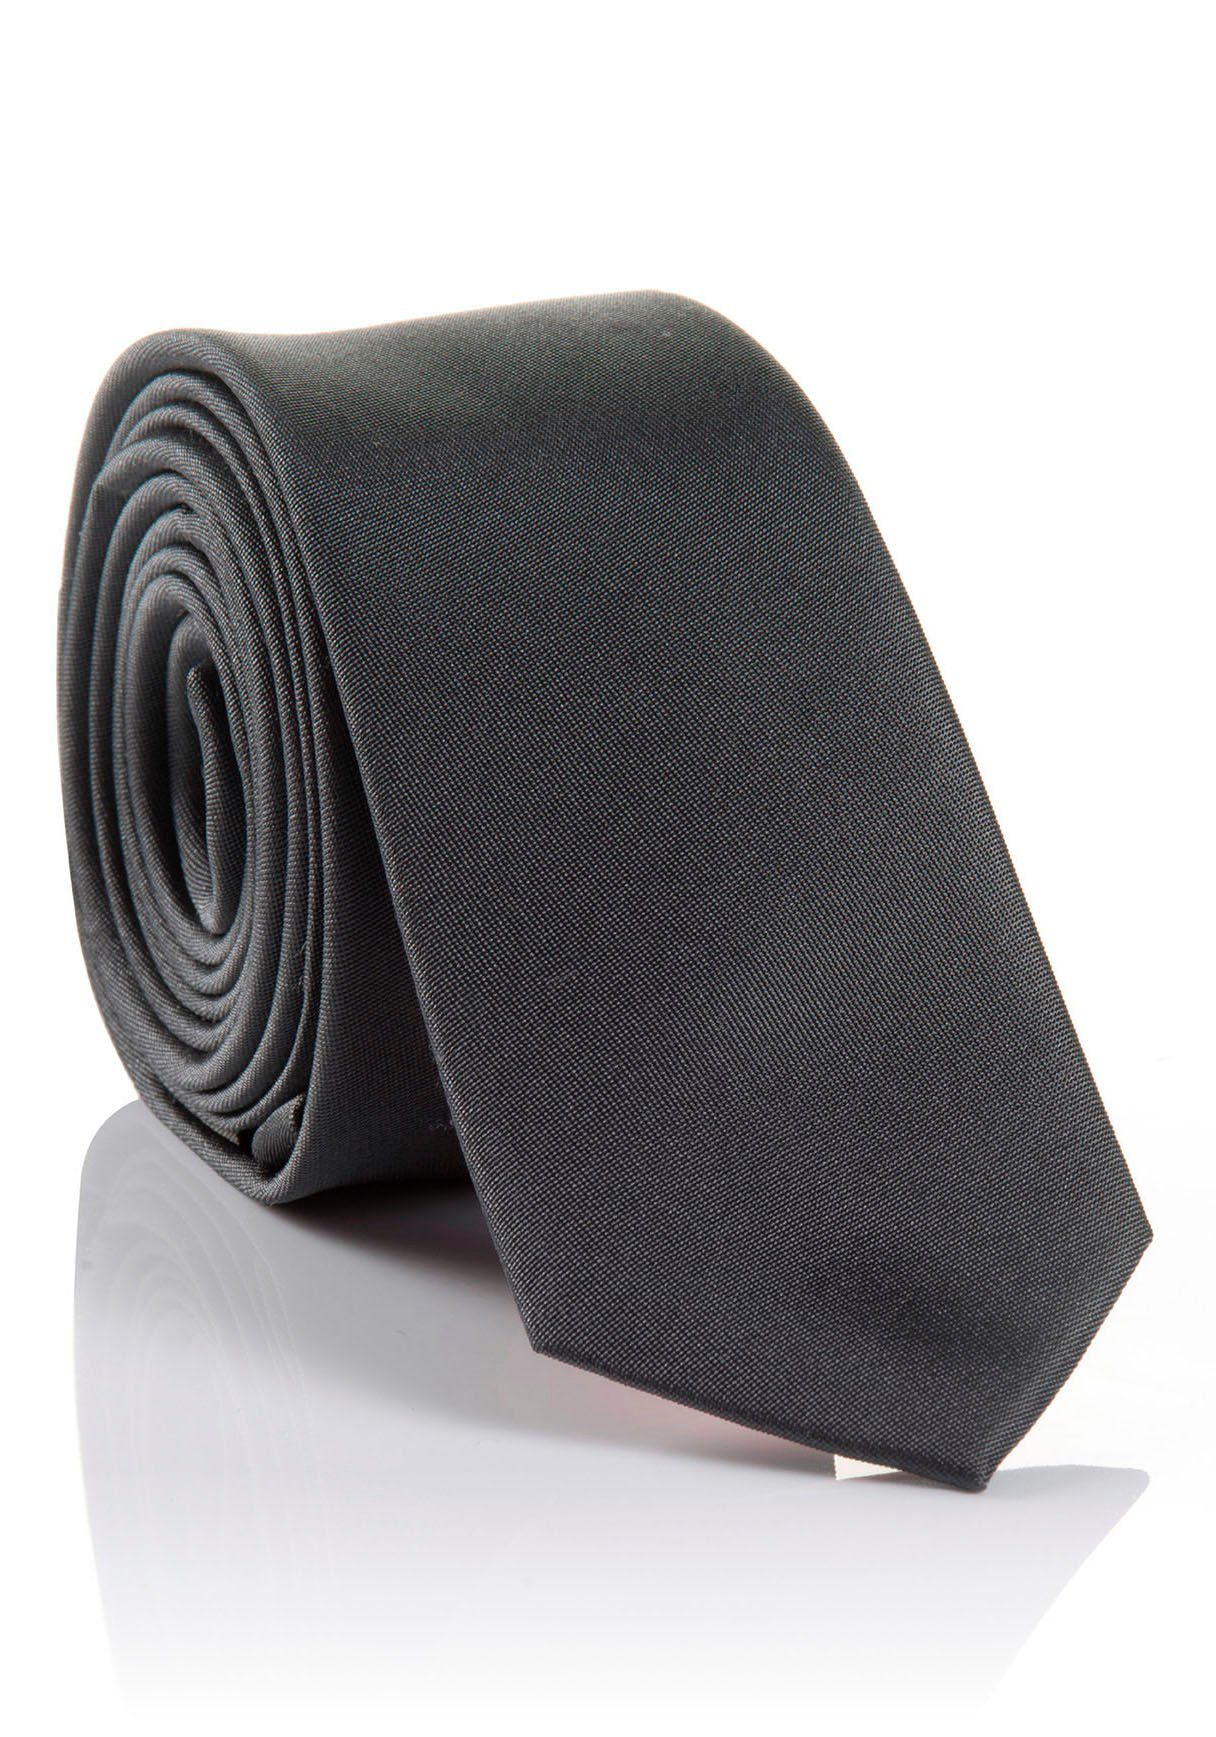 Seidenkrawatte Krawatte Hochwertig LORENZO grey verarbeitete mit hohem MONTI Tragekomfort